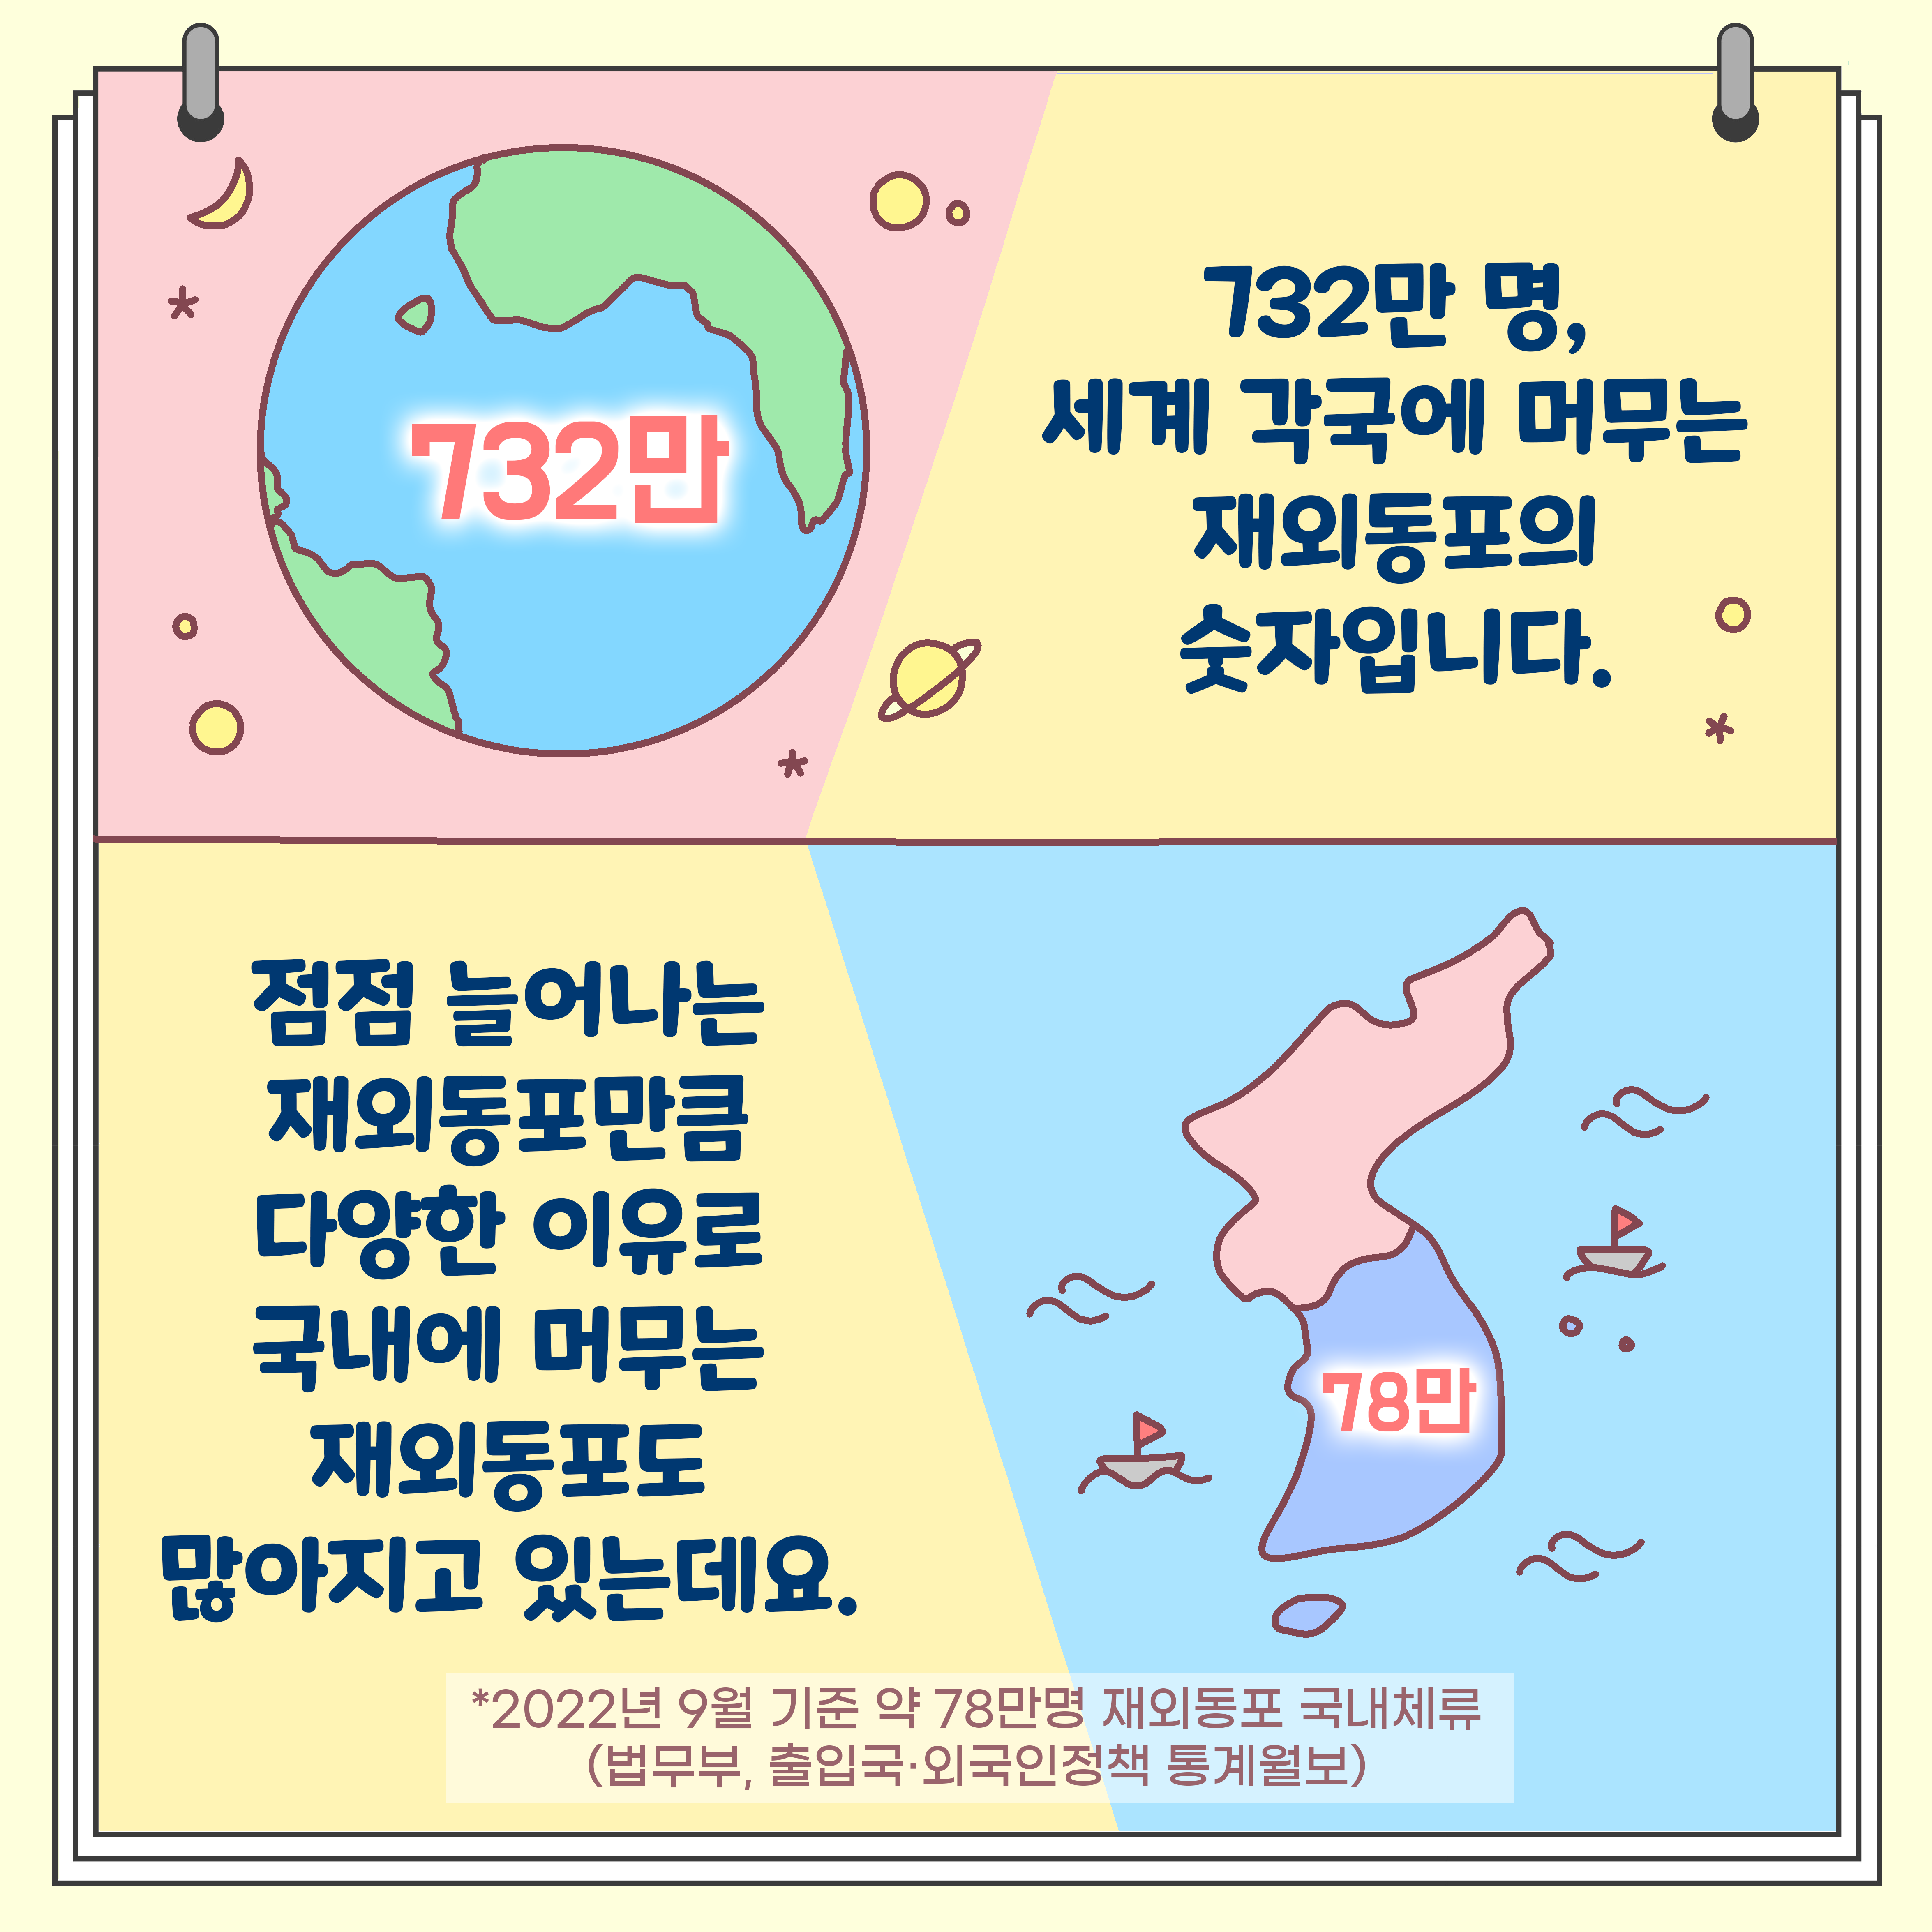 [참가] 2022년 제7차 열린소통포럼 ❝모두가 누리는 편리한 대한민국, 재외동포를 위한 행정 서비스 개편❞에 여러분을 초대합니다